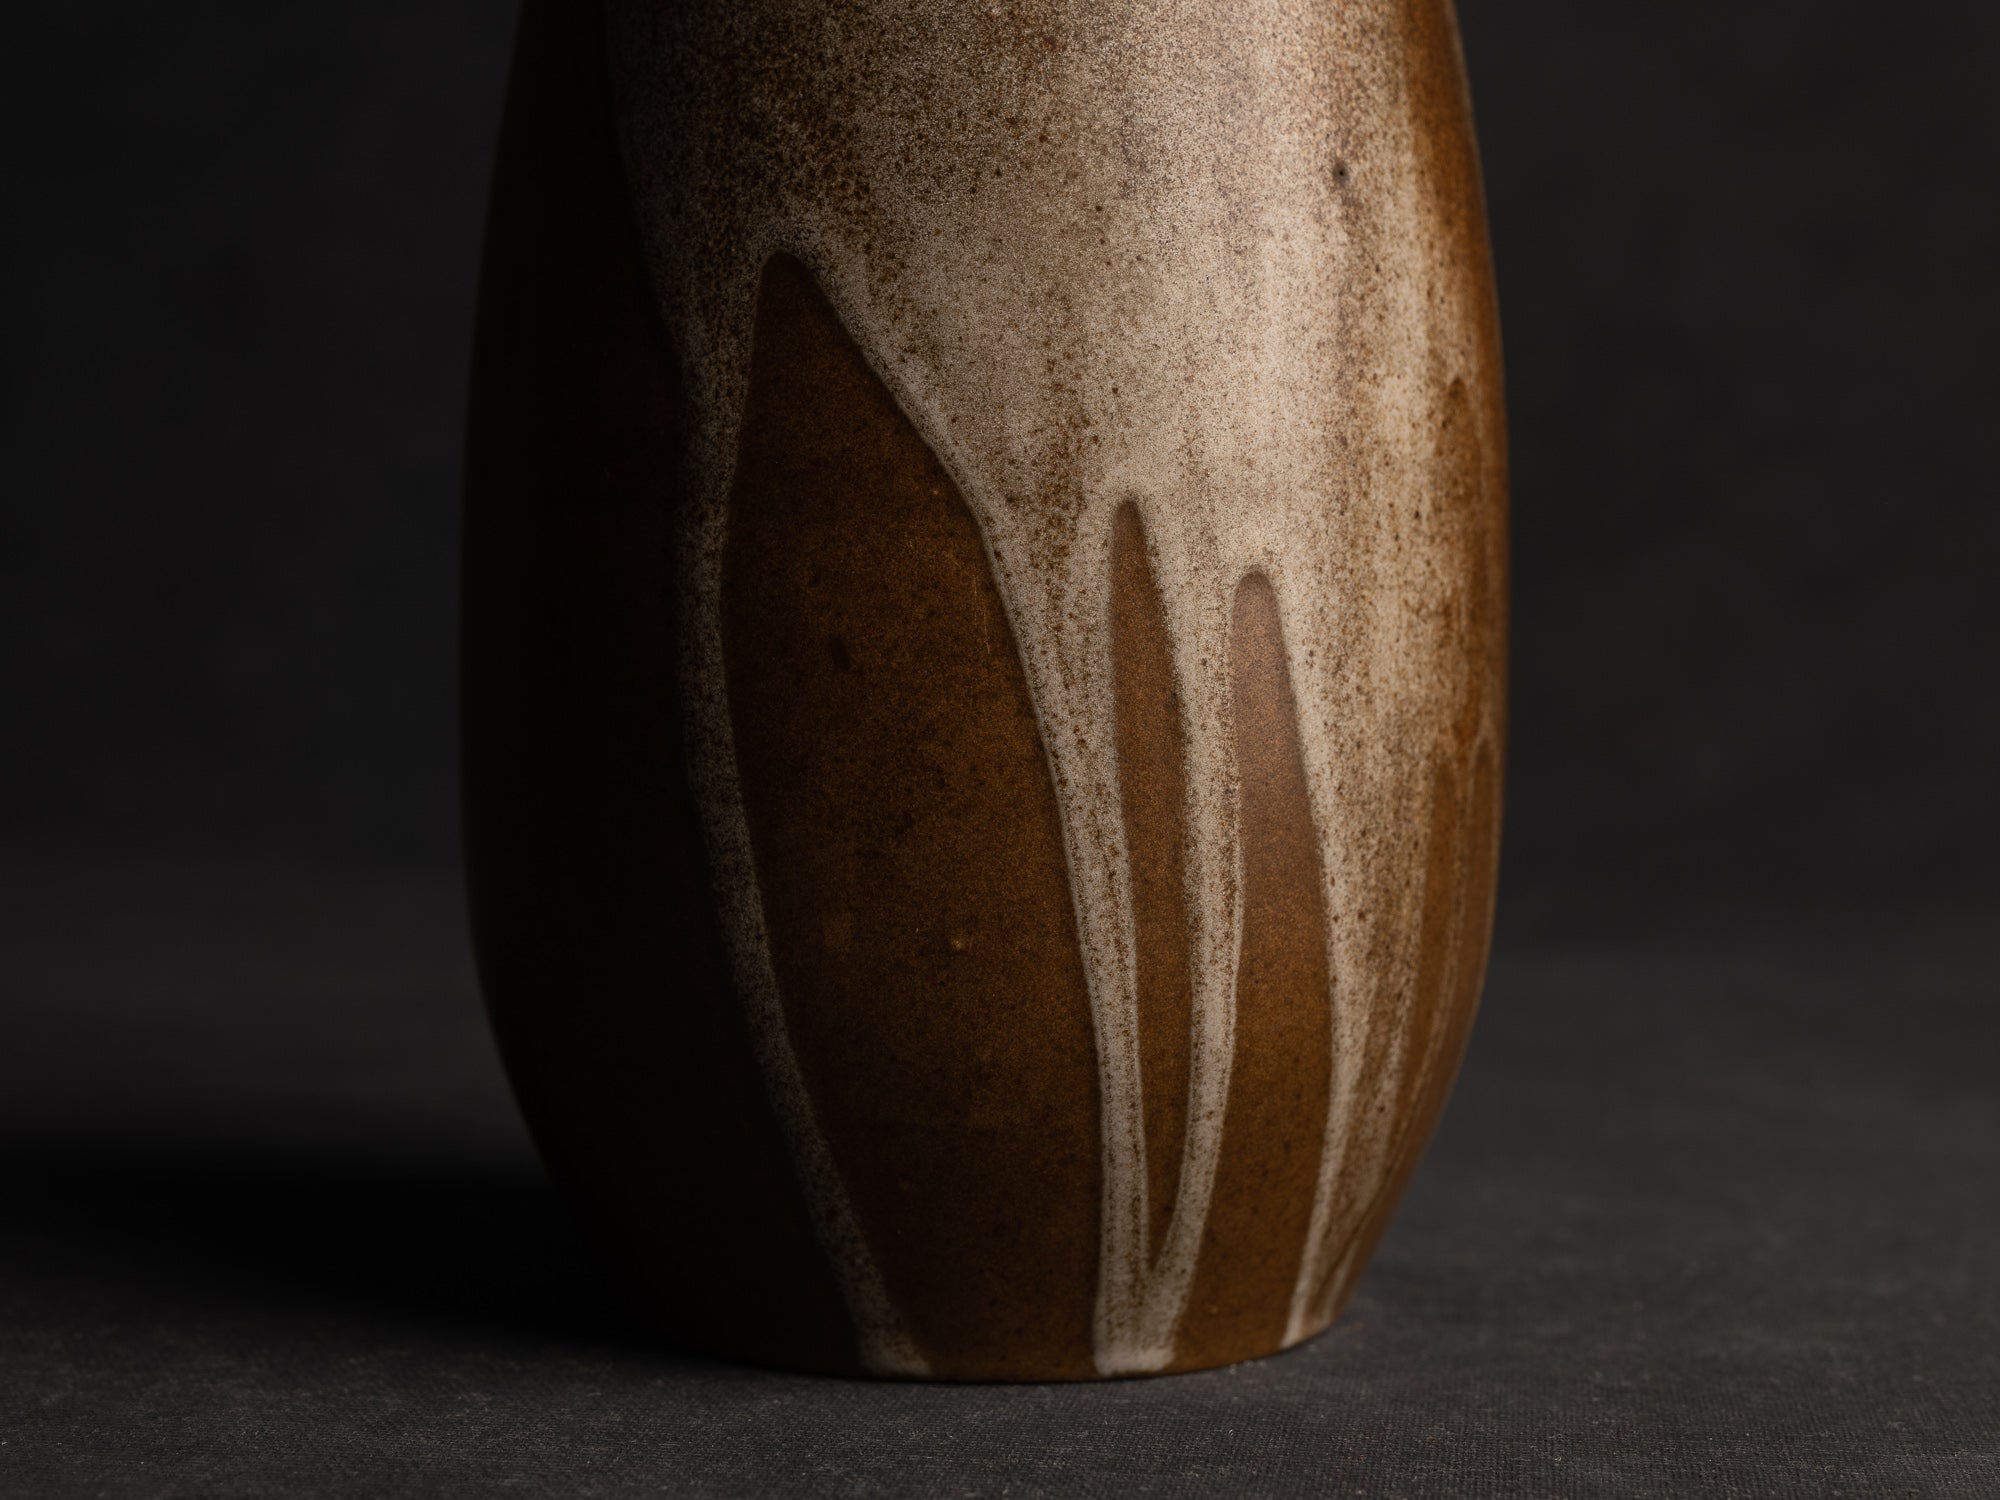 Vase ovoïde en grès japonisant de Léon Pointu, Atelier Pointu, France (vers 1910-25)..School of Carriès, ovoid japonisme stoneware vase by Léon Pointu, Atelier Pointu, France (circa 1910-25)